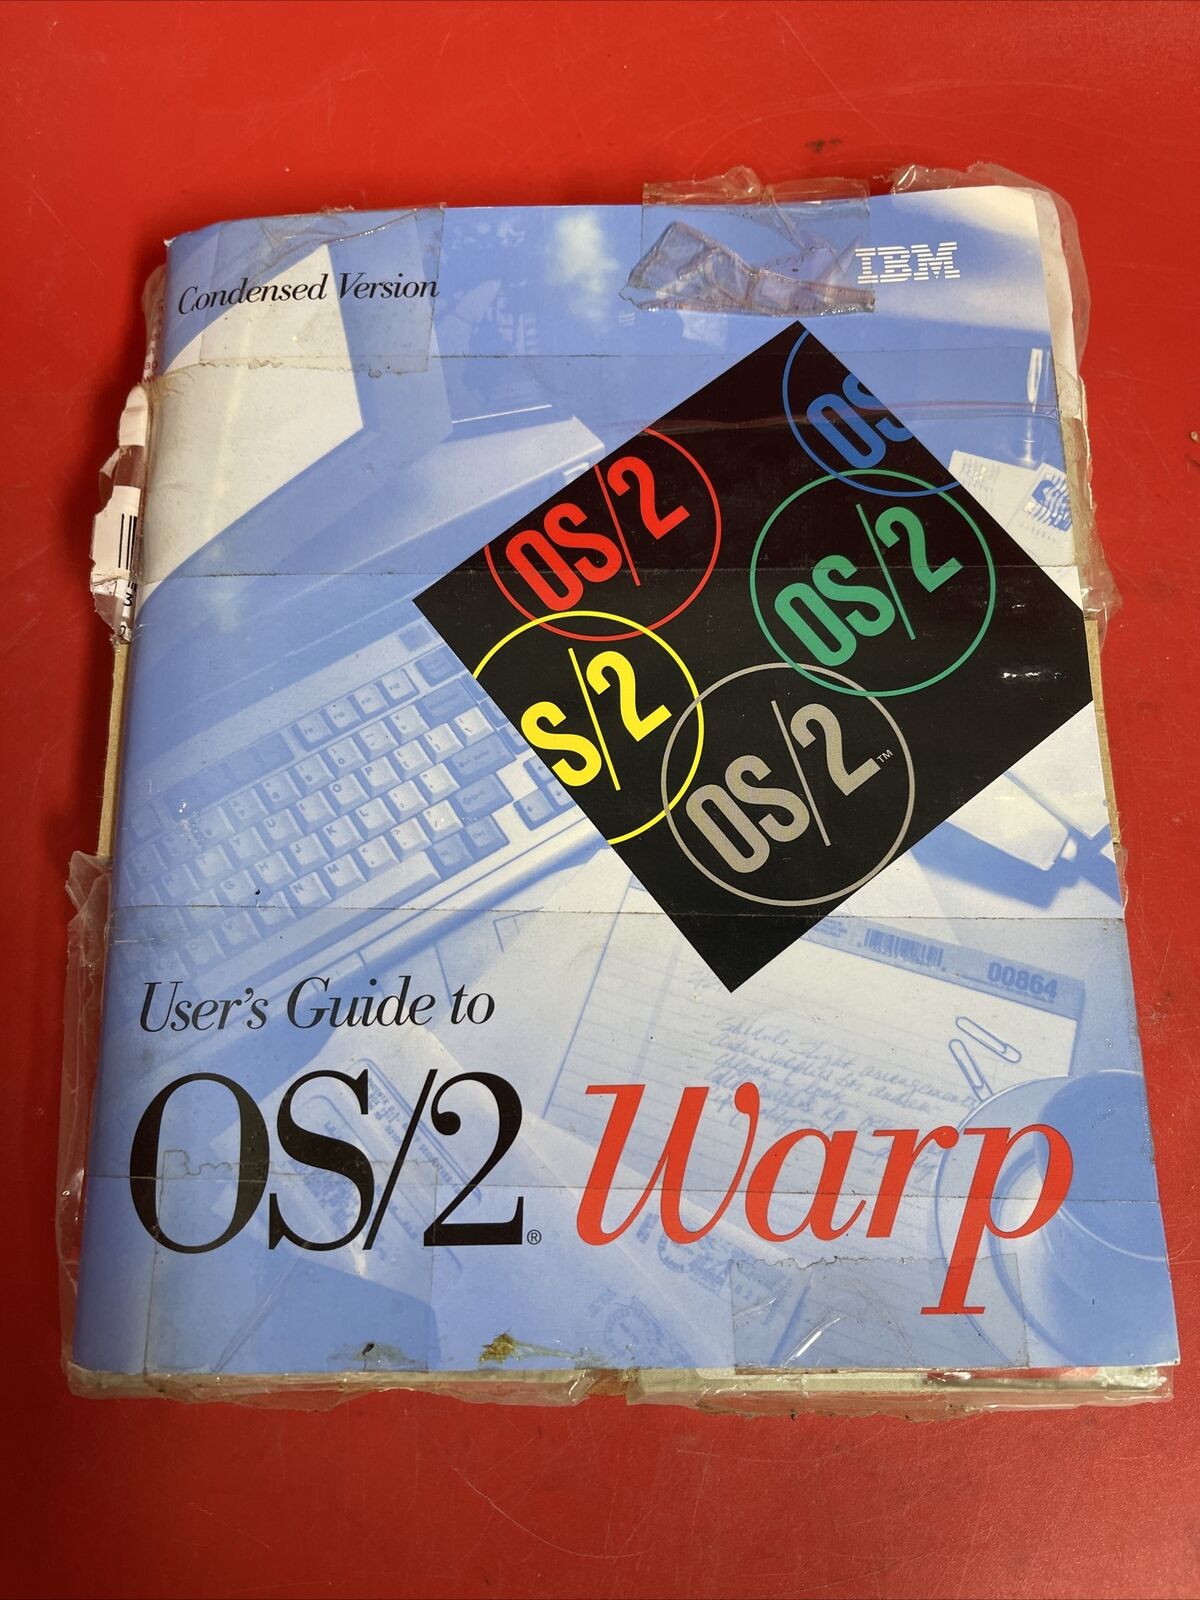 VTG 1995 IBM User’s Guide to OS/2 Warp Software Manual & Set disks